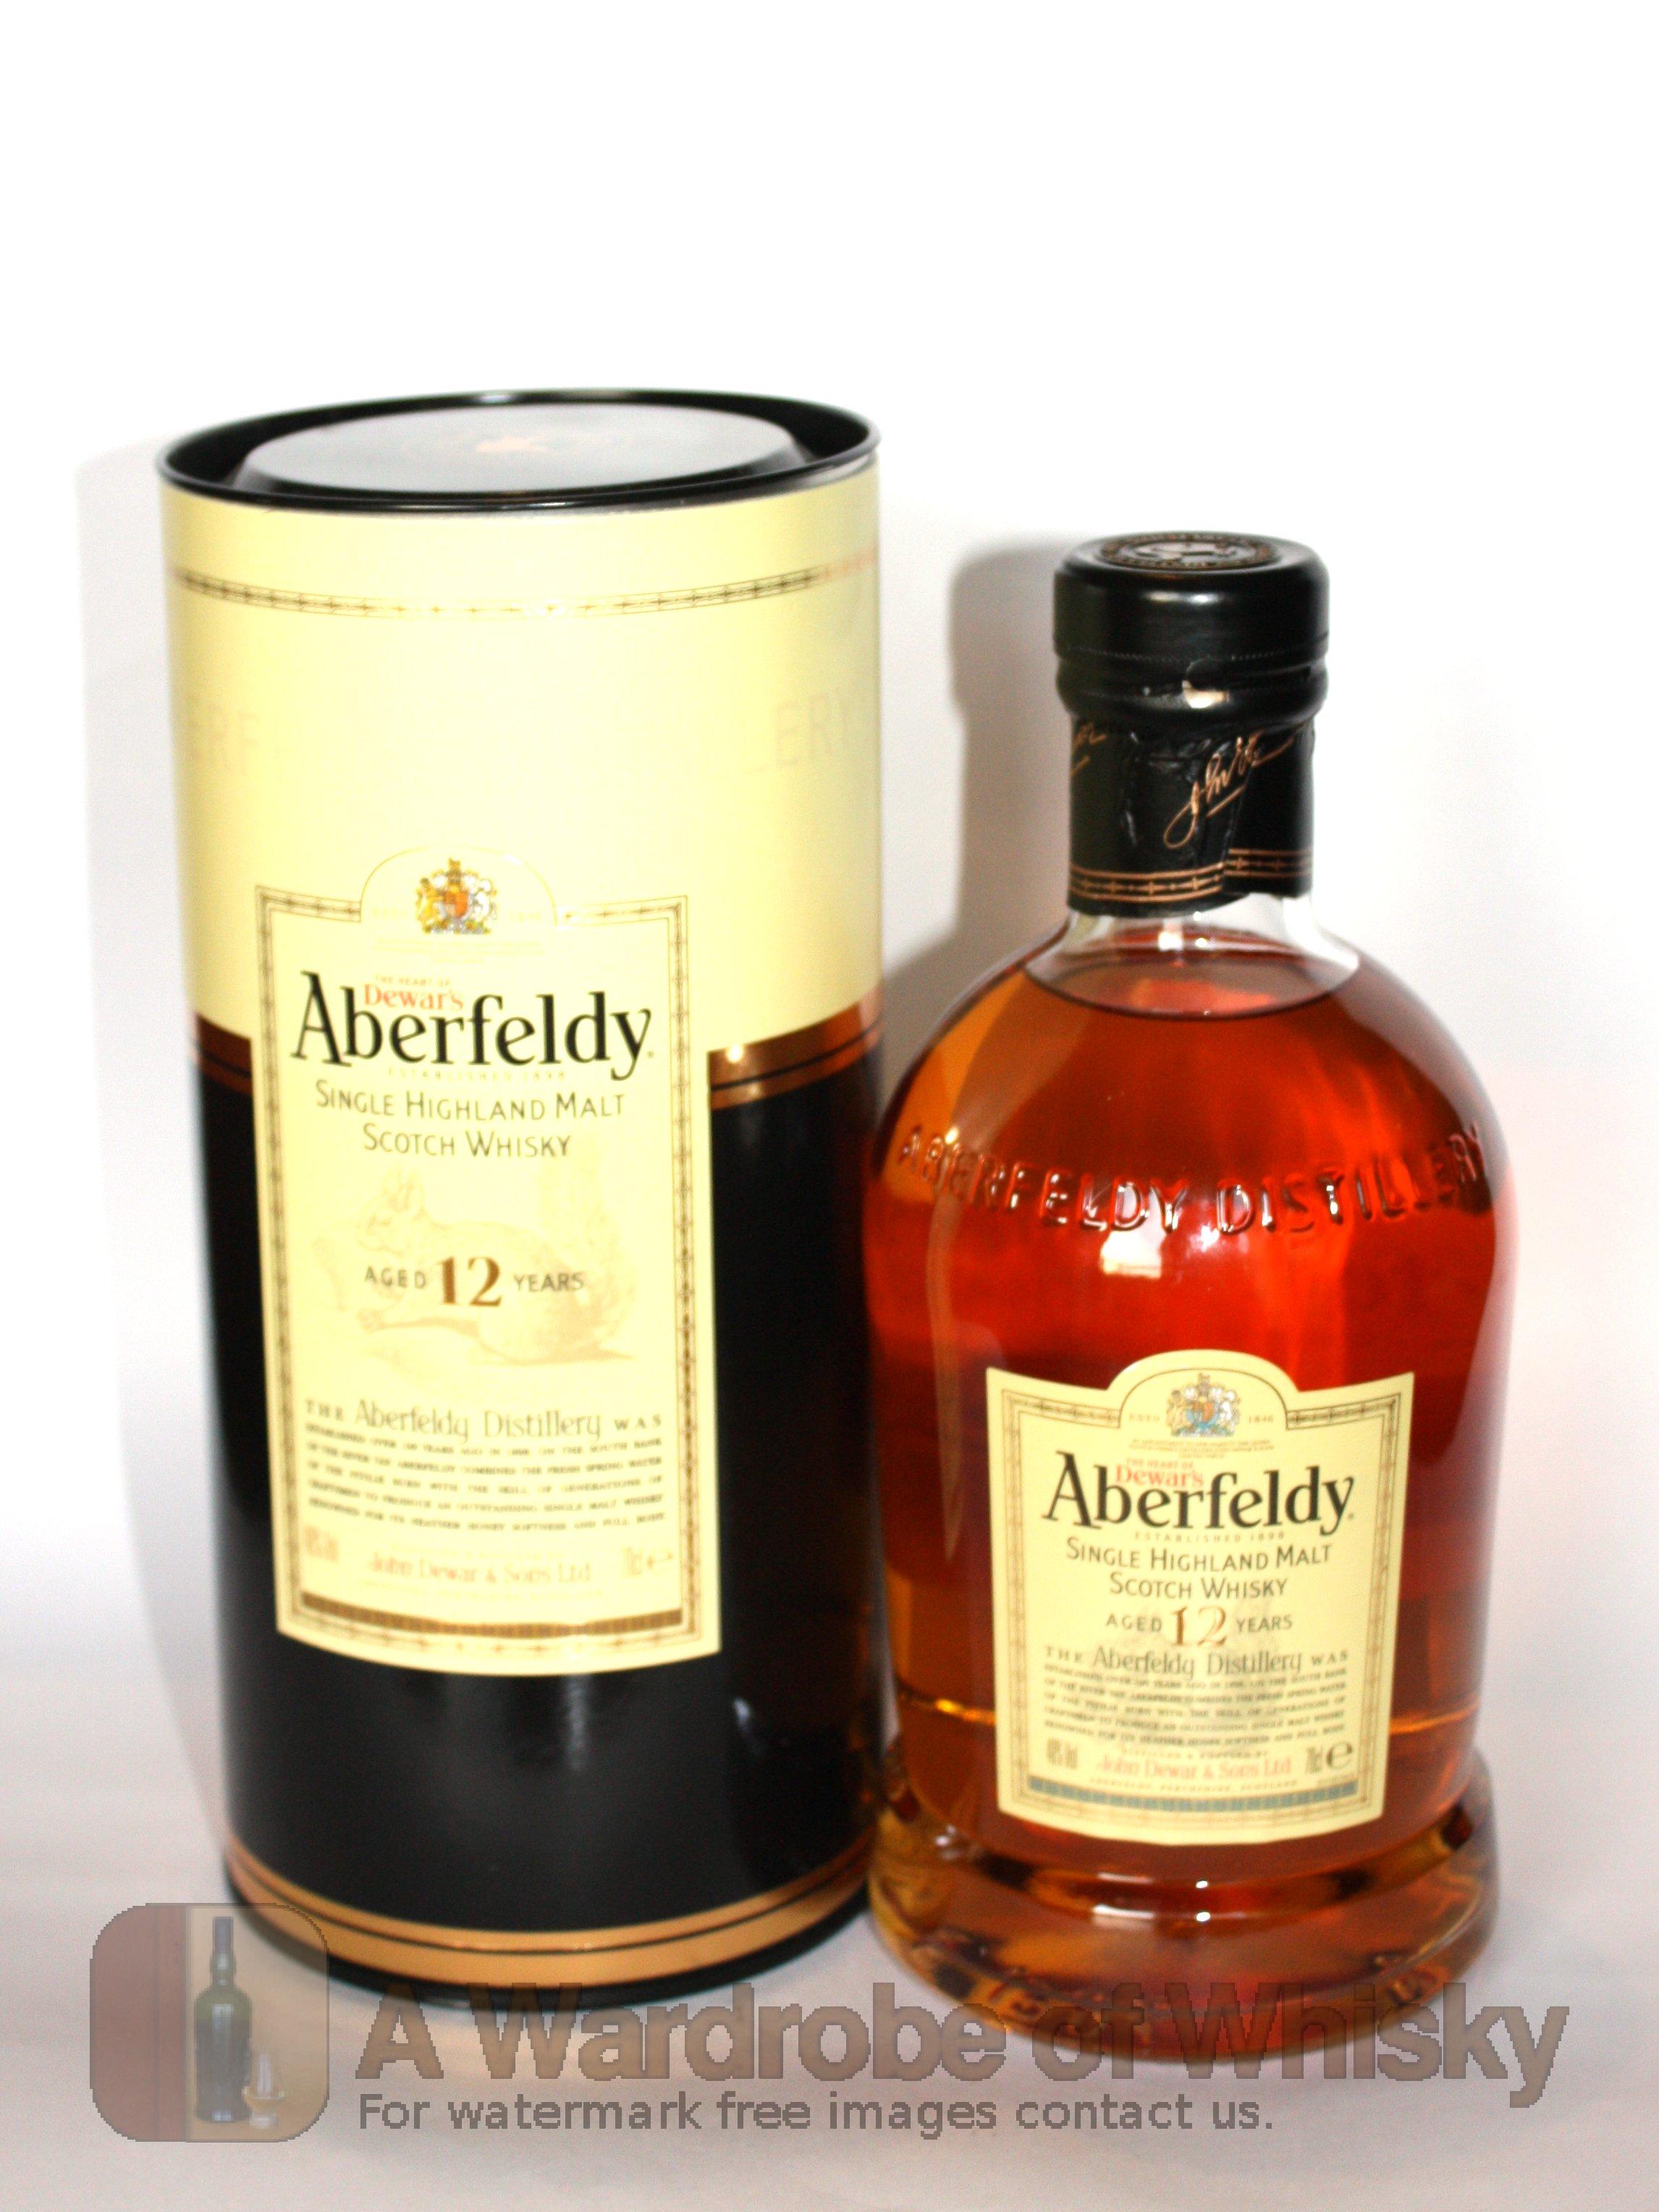 Aberfeldy 12-Year Single Malt Scotch Whisky Review